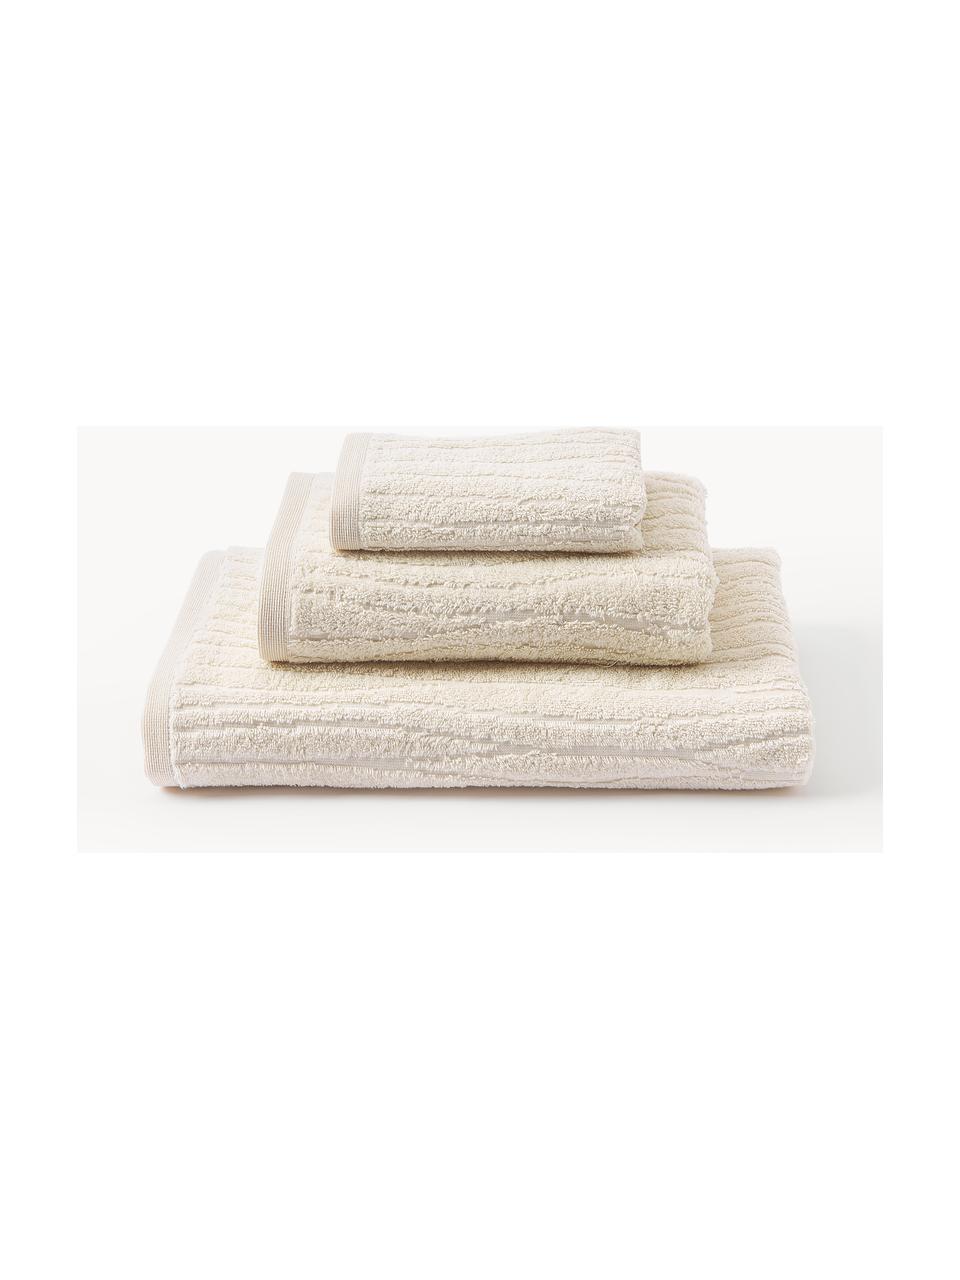 Komplet ręczników z bawełny Audrina, różne rozmiary, Jasny beżowy, 3 elem. (ręcznik dla gości, ręcznik do rąk, ręcznik kąpielowy)